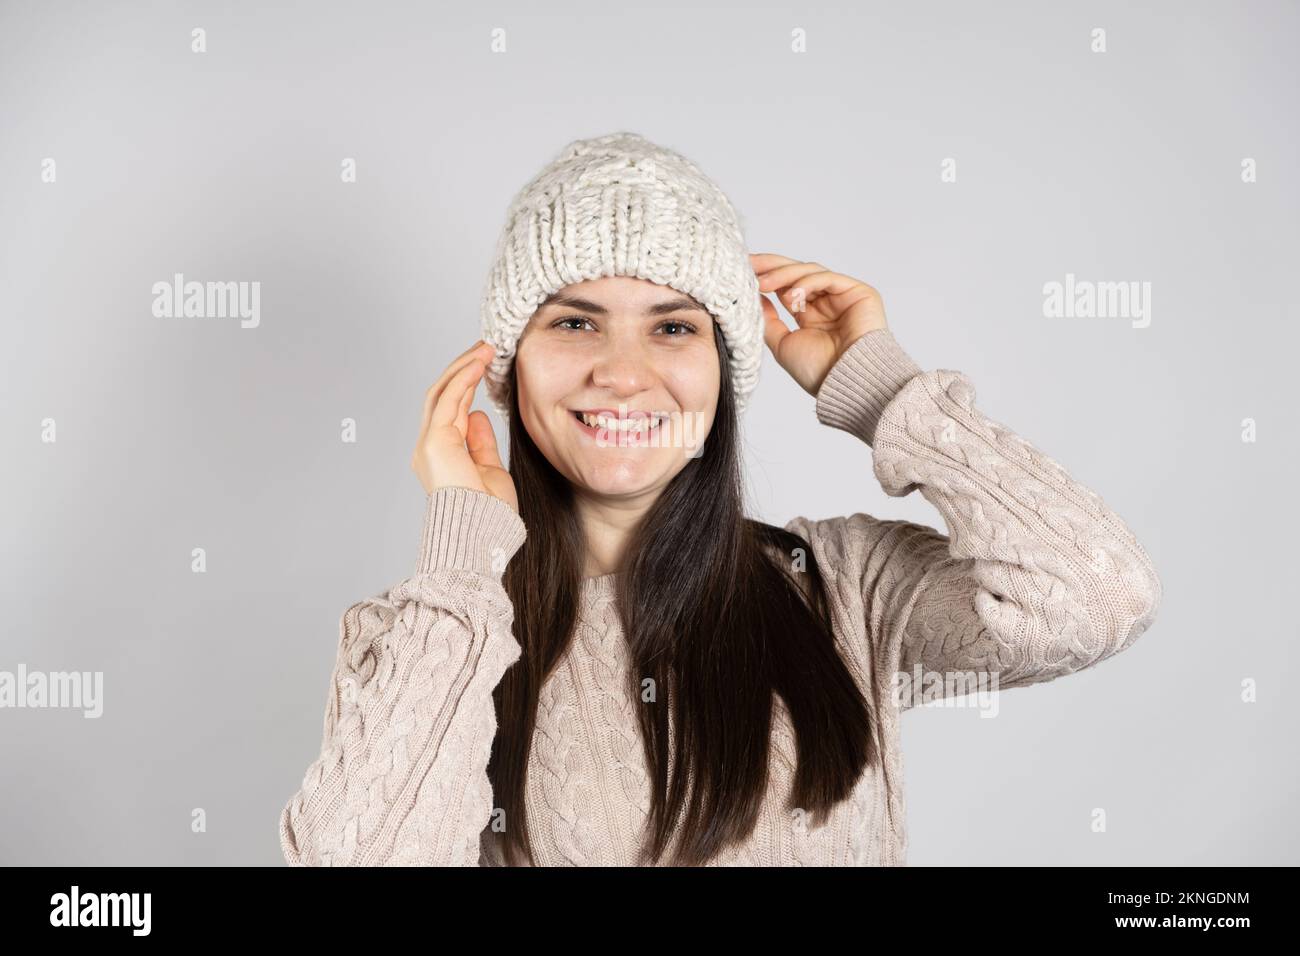 Une femme brune heureuse dans un chapeau d'hiver et un chandail tricoté sourit sur un fond blanc. Banque D'Images